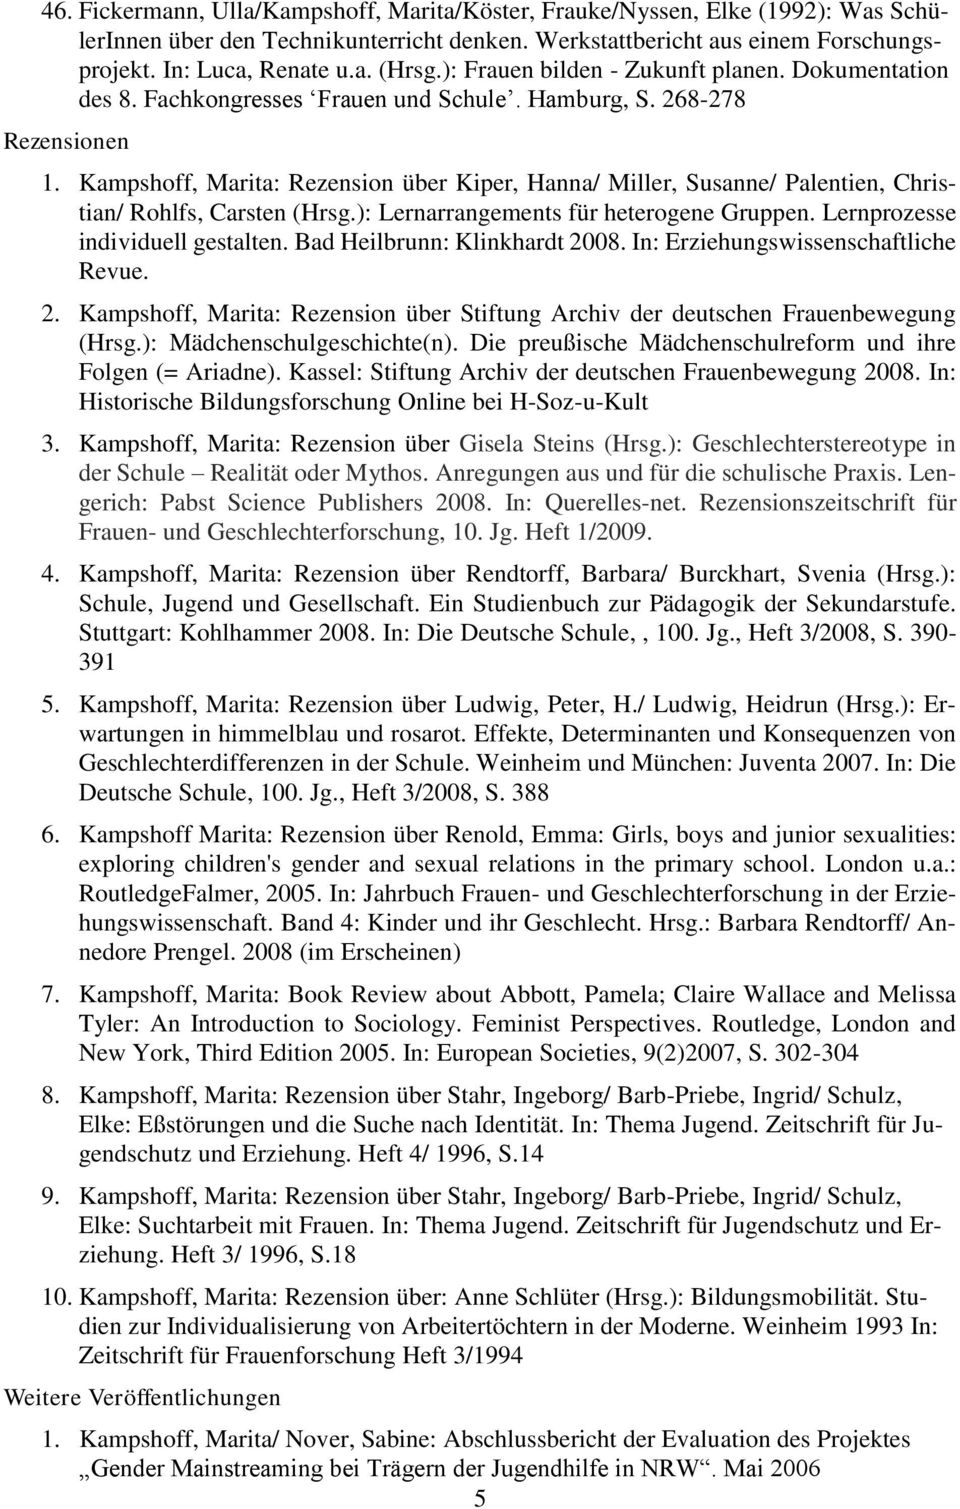 Kampshoff, Marita: Rezension über Kiper, Hanna/ Miller, Susanne/ Palentien, Christian/ Rohlfs, Carsten (Hrsg.): Lernarrangements für heterogene Gruppen. Lernprozesse individuell gestalten.